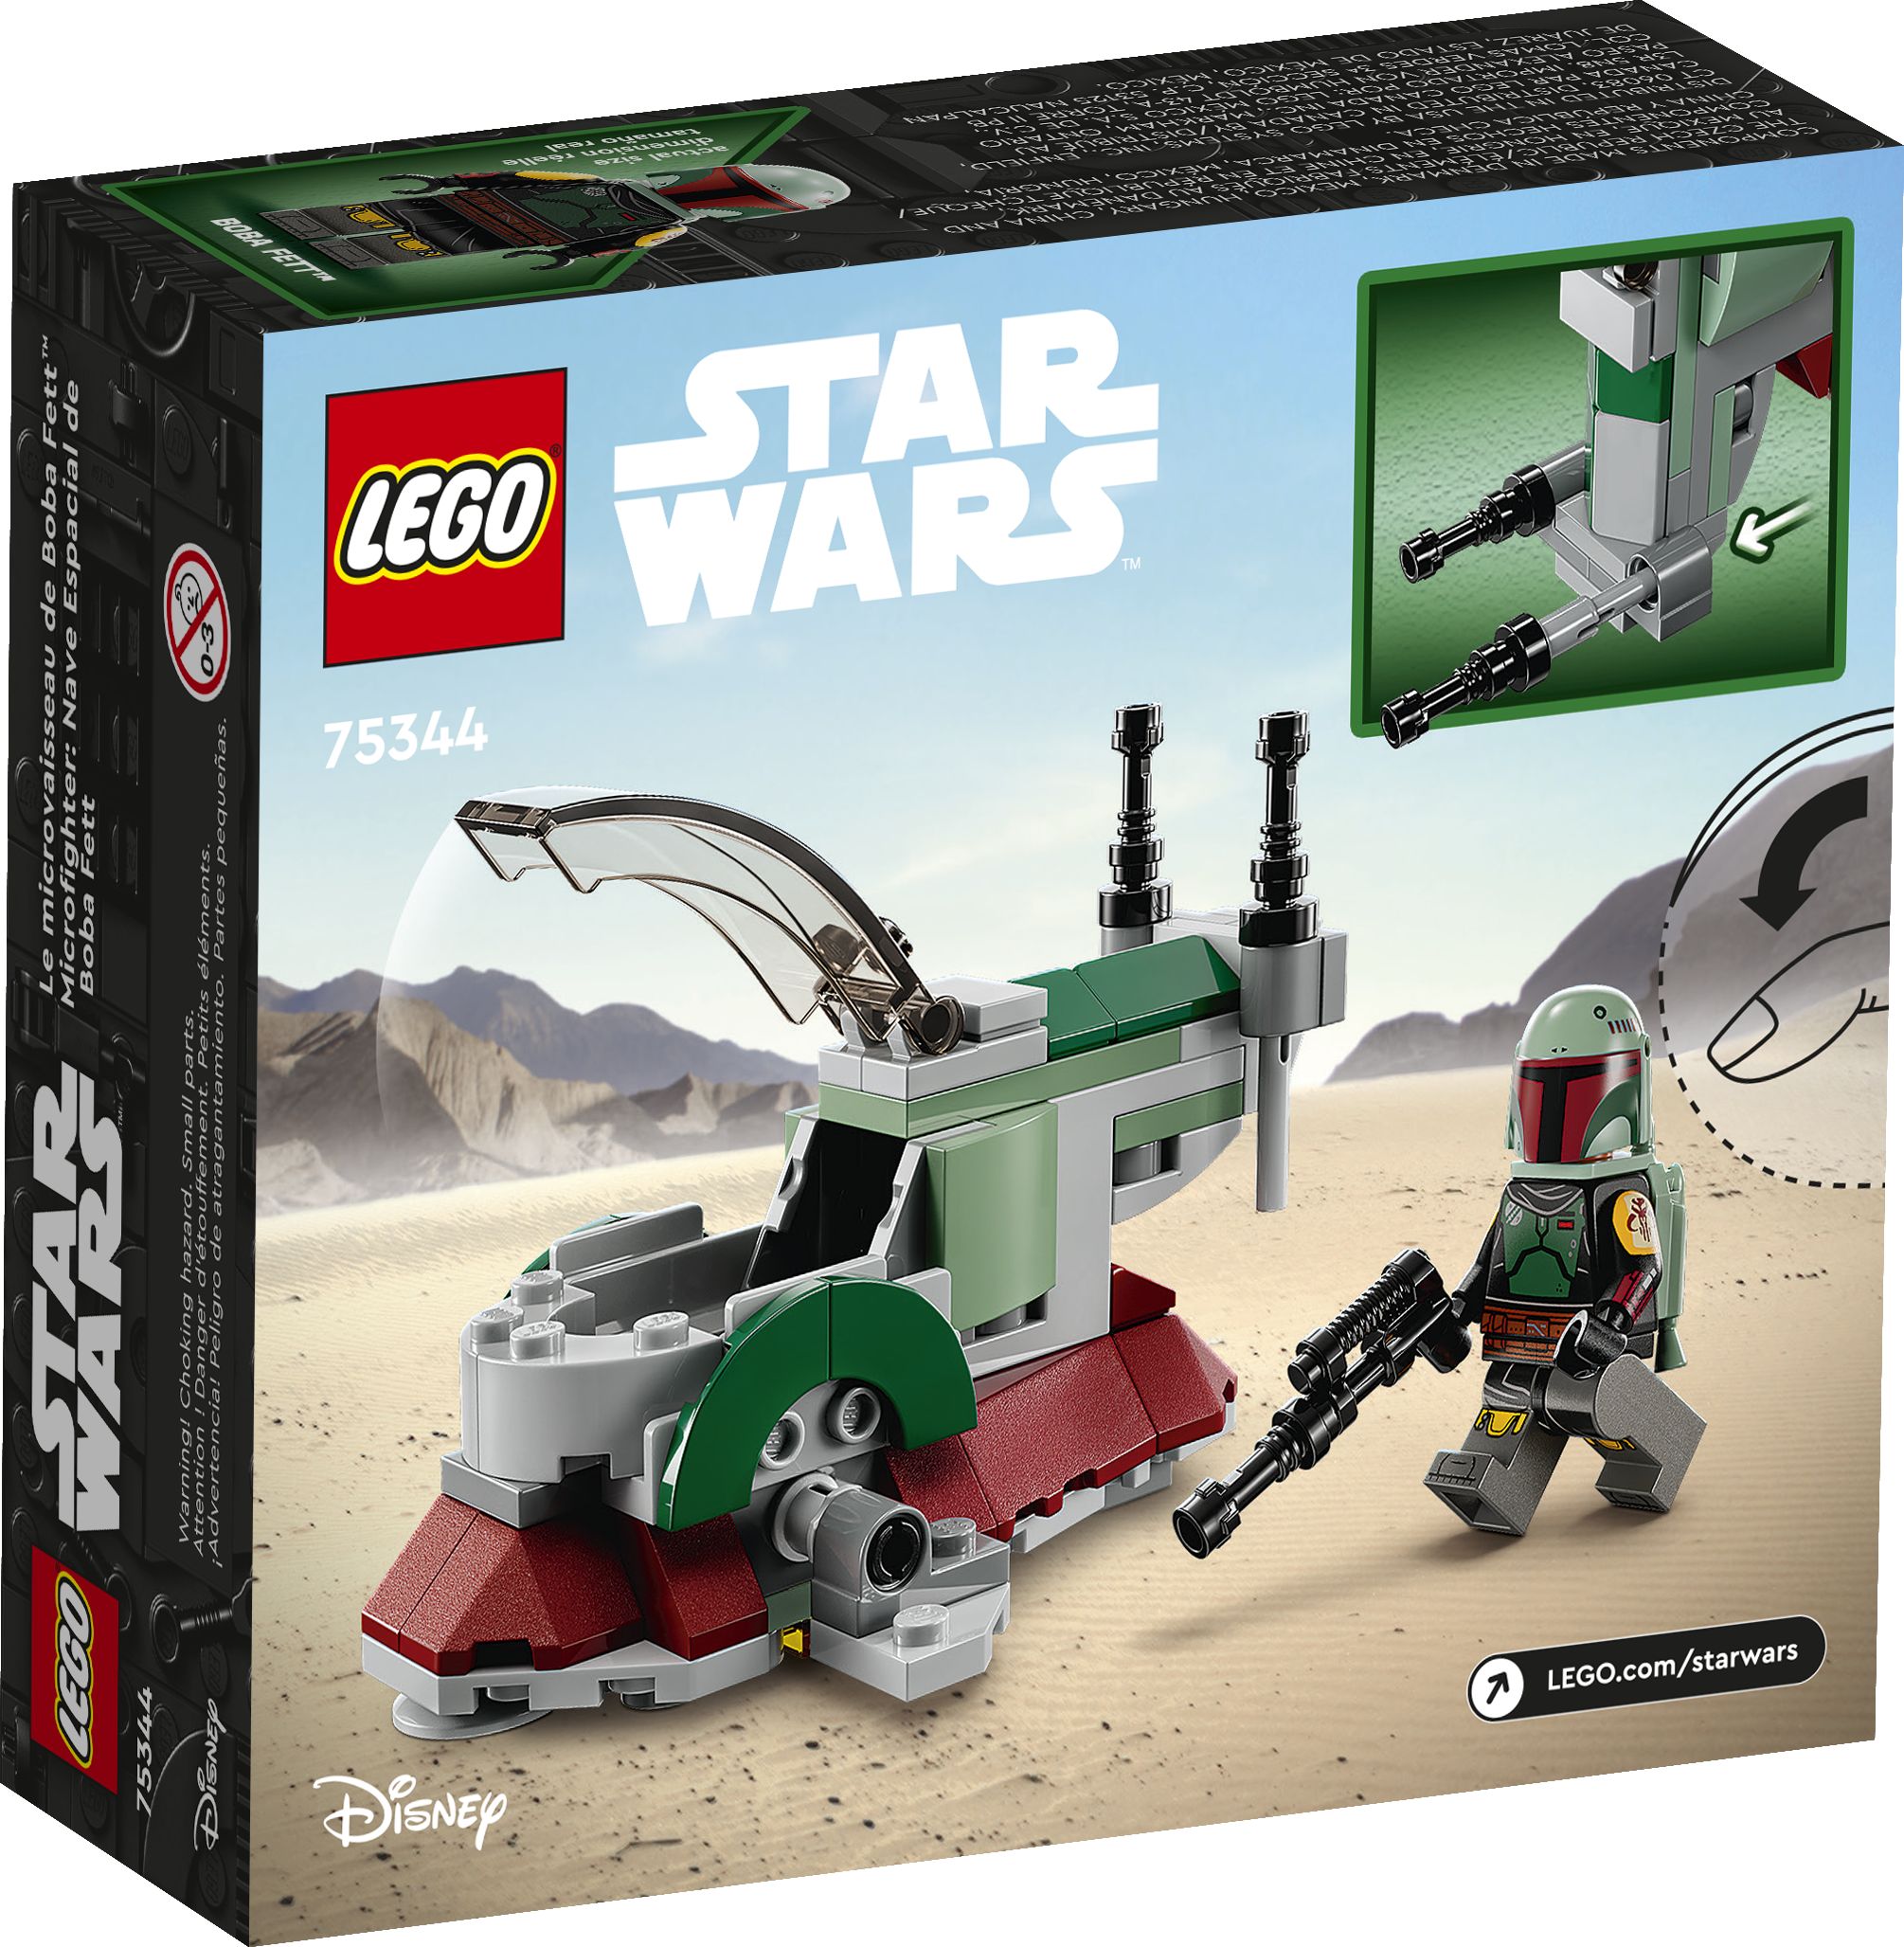 LEGO Star Wars 75344 Boba Fetts Starship™ – Microfighter LEGO_75344_Box5_v39.jpg